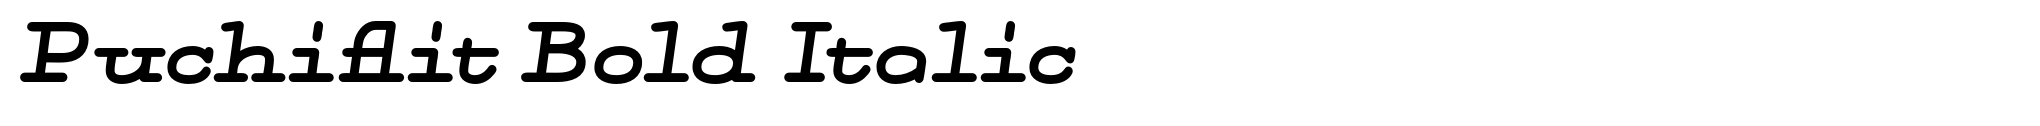 Puchiflit Bold Italic image